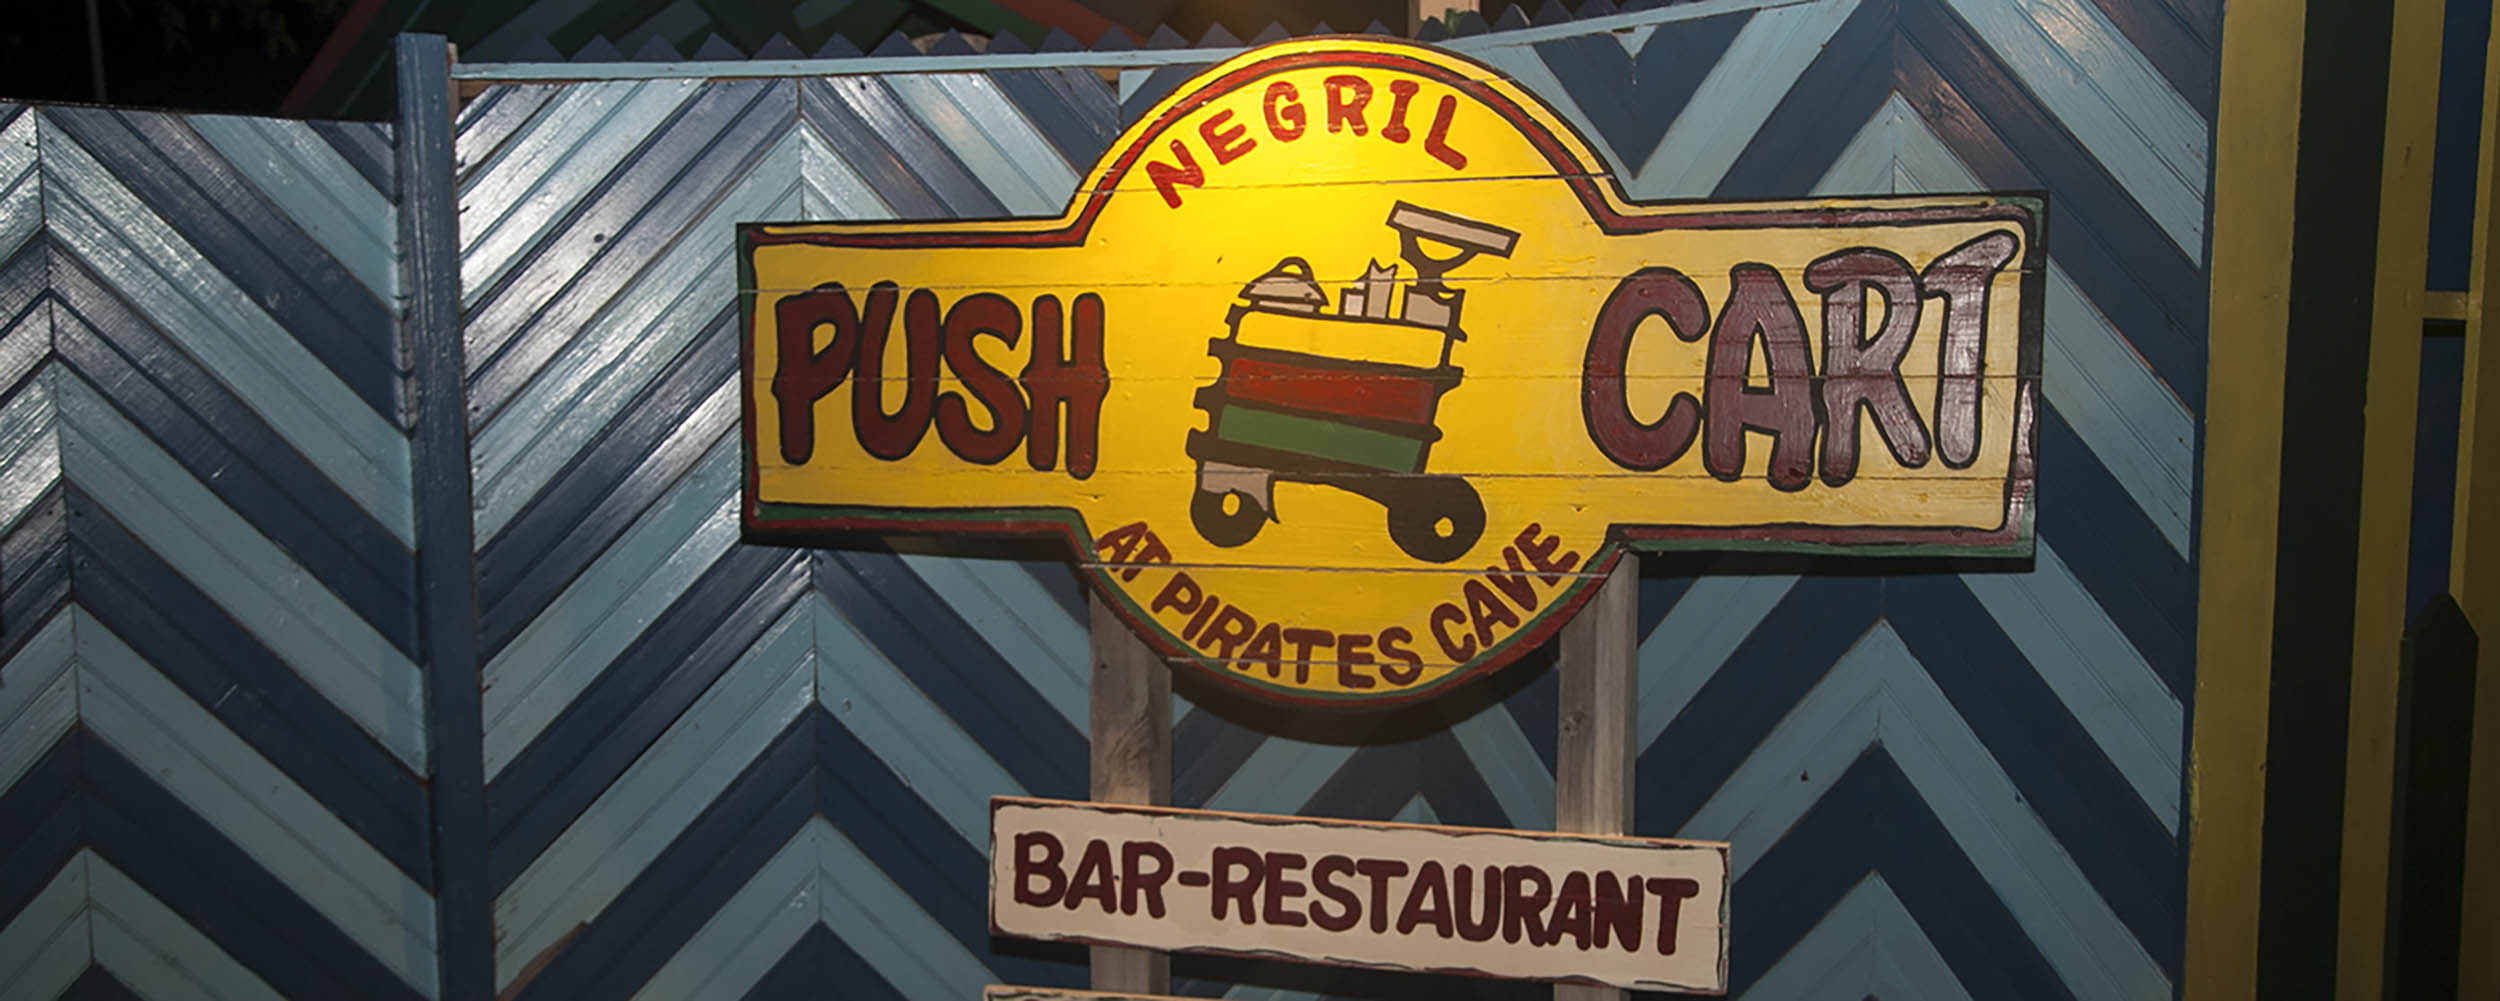 Push Cart Restaurant & Bar - Negril Jamaica